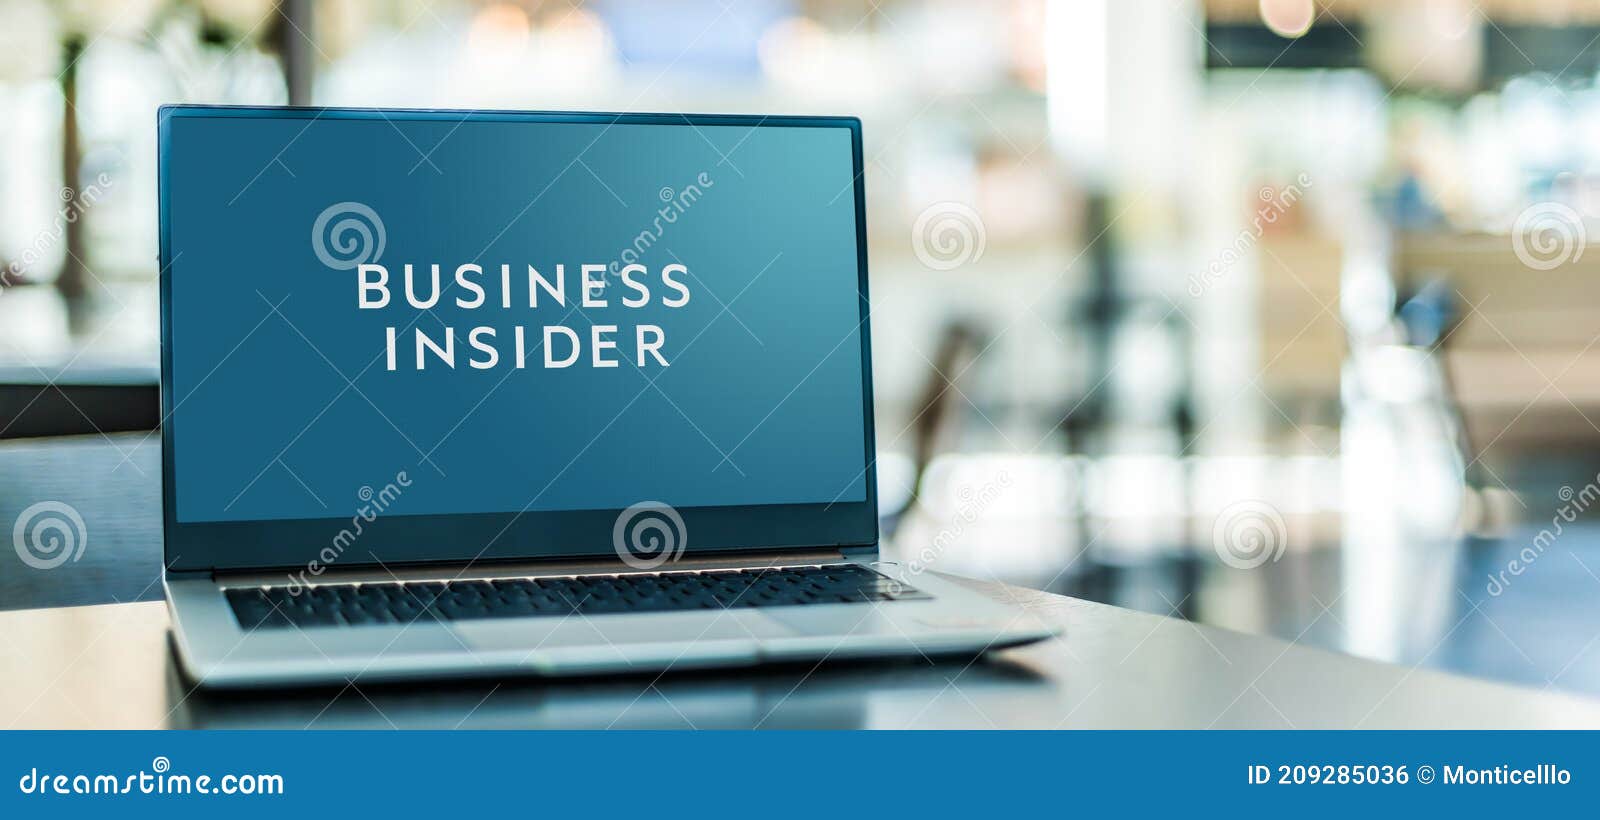 Business Insider Logo PNG Transparent & SVG Vector - Freebie Supply